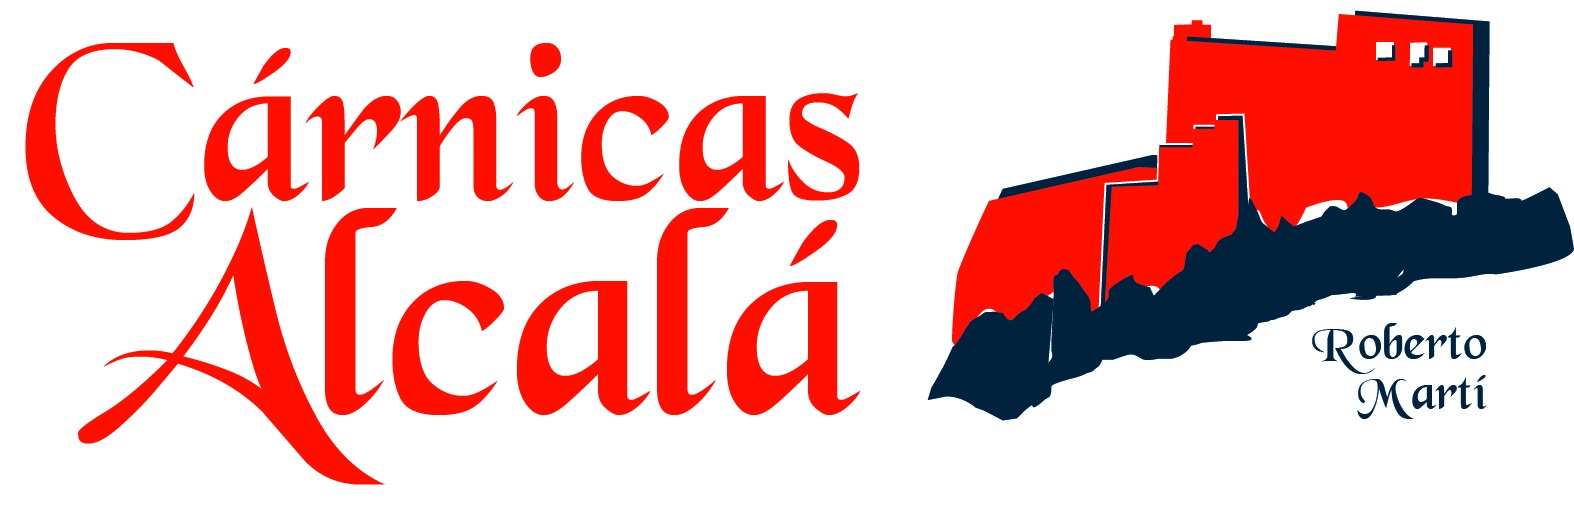 Cárnicas Alcalá Logo